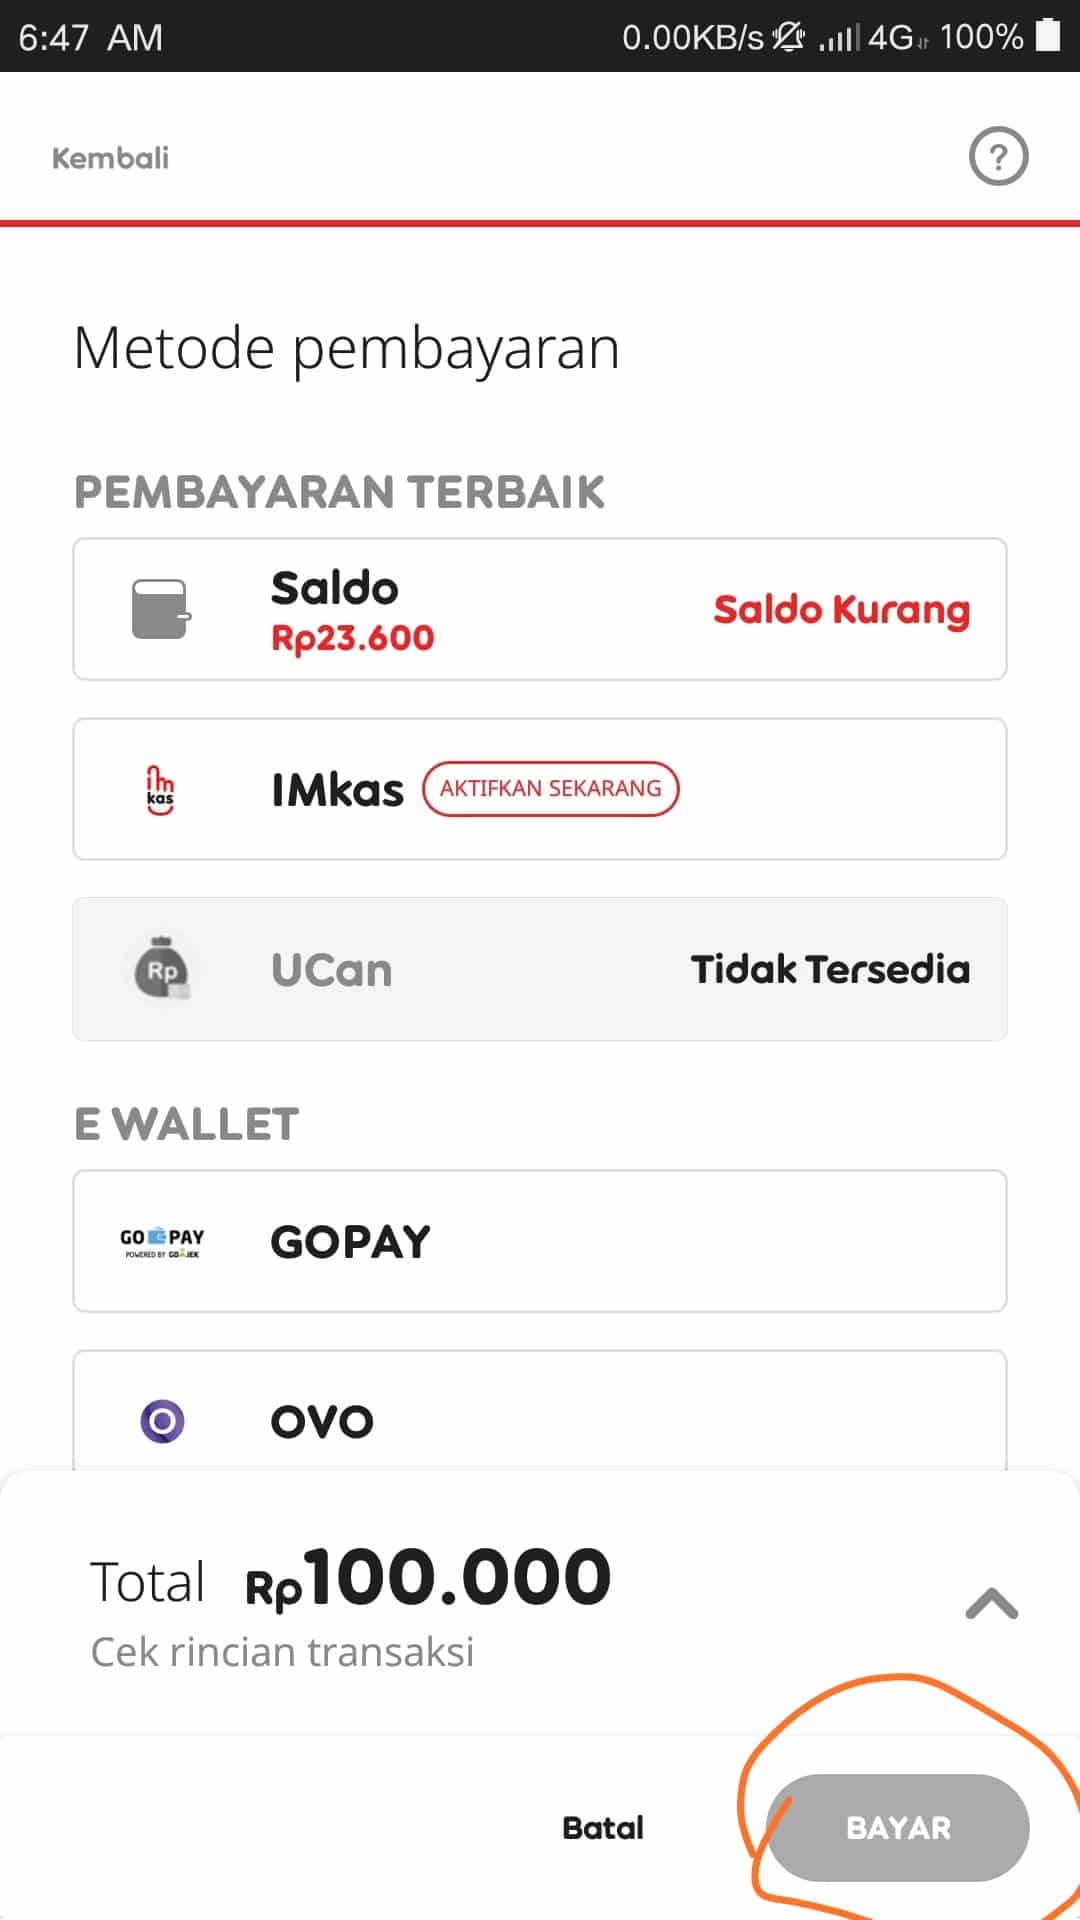 Tunggu konfirmasi dari Indosat mengenai pembeliannya